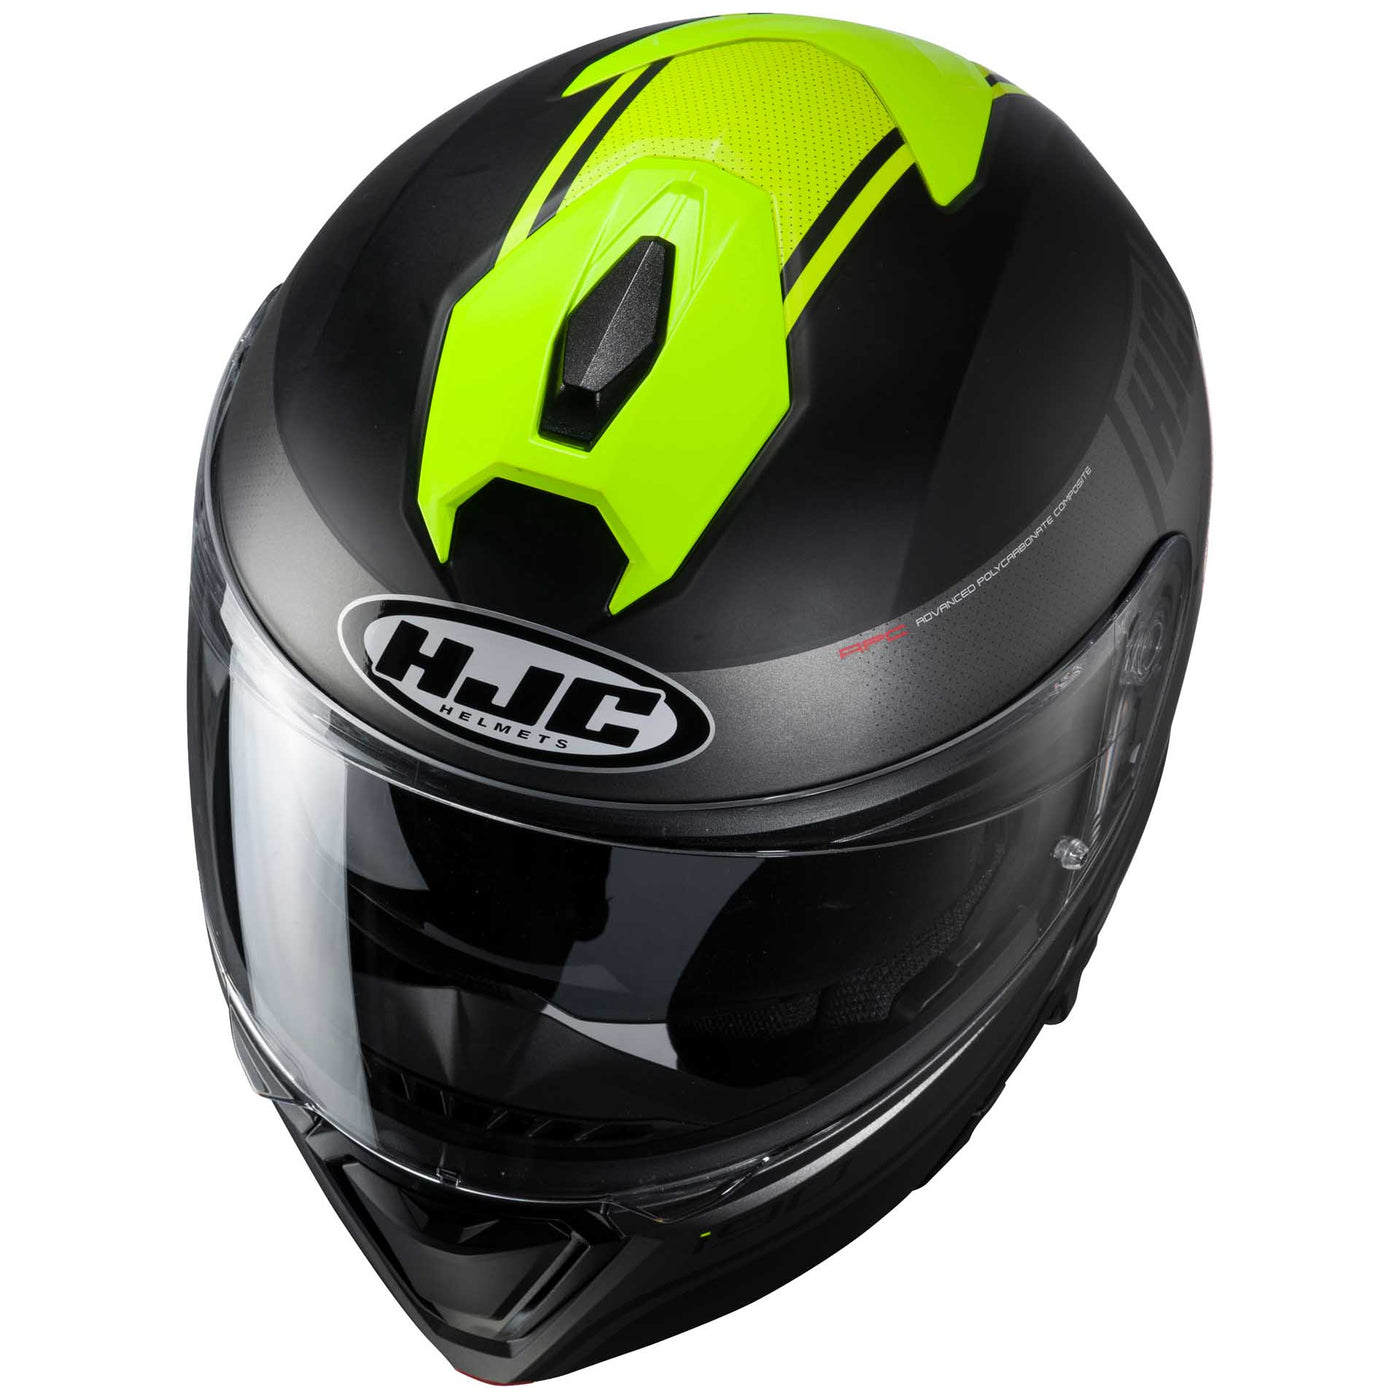 HJC i90 Davan Motorcycle Helmet